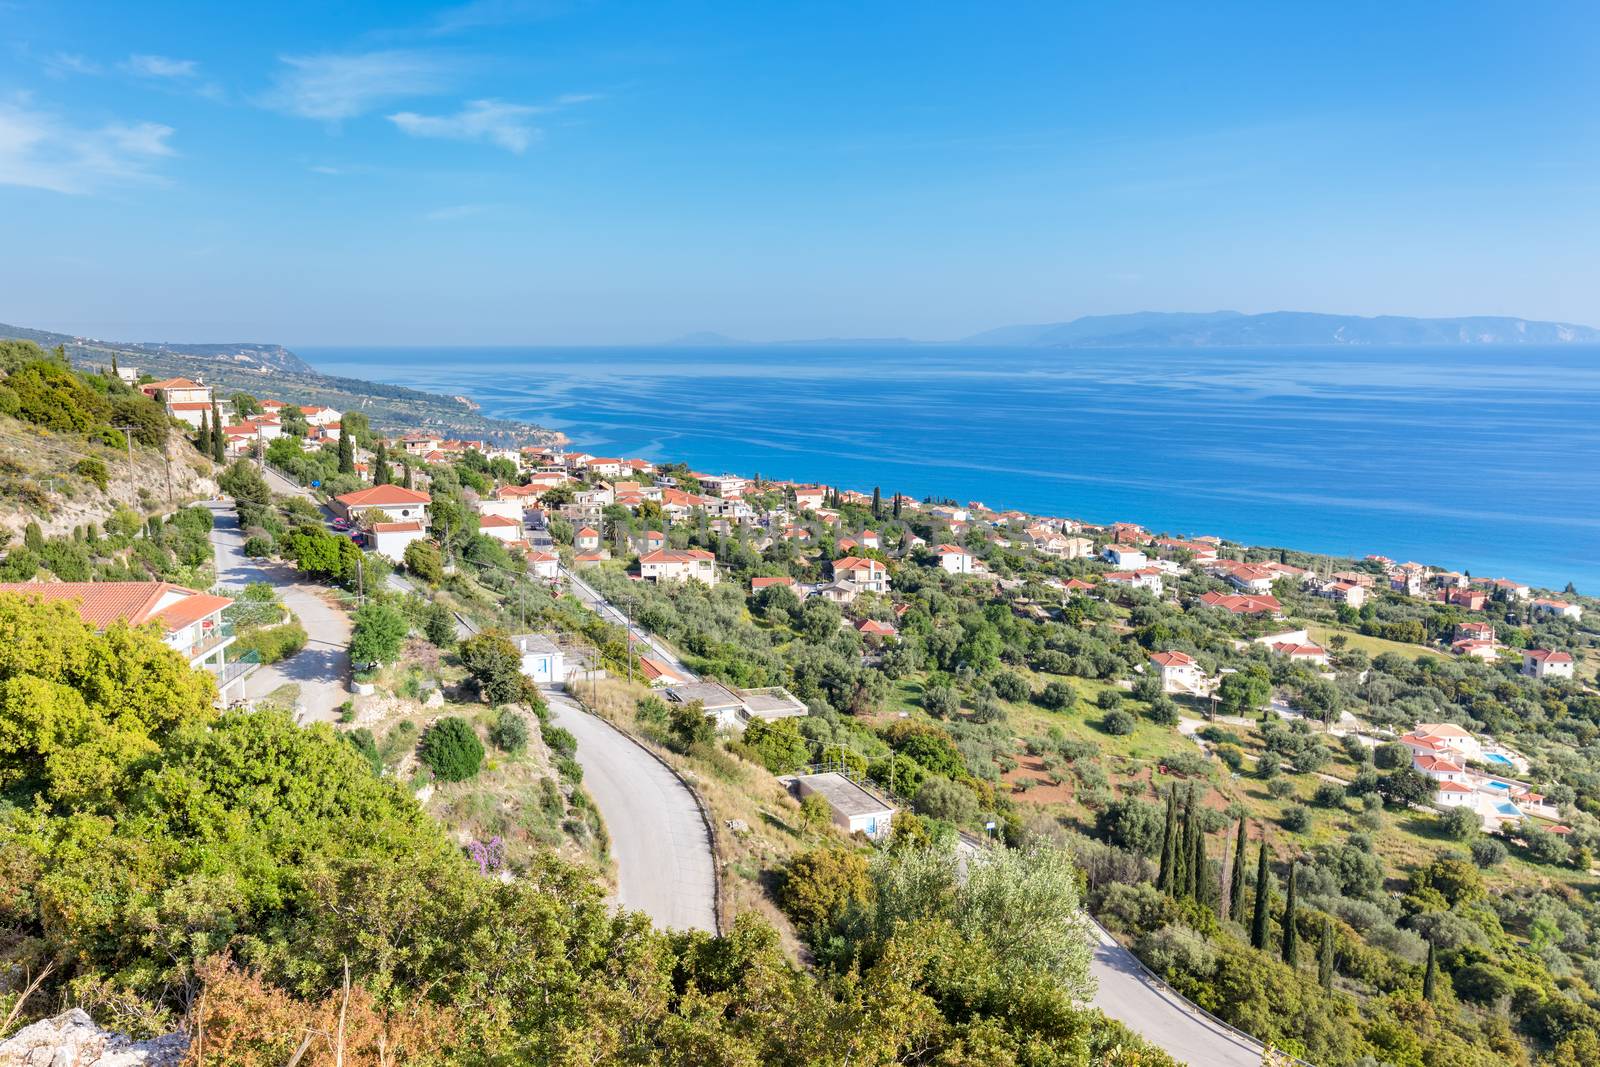 Greek village showing houses at coast near blue sea in Kefalonia Greece